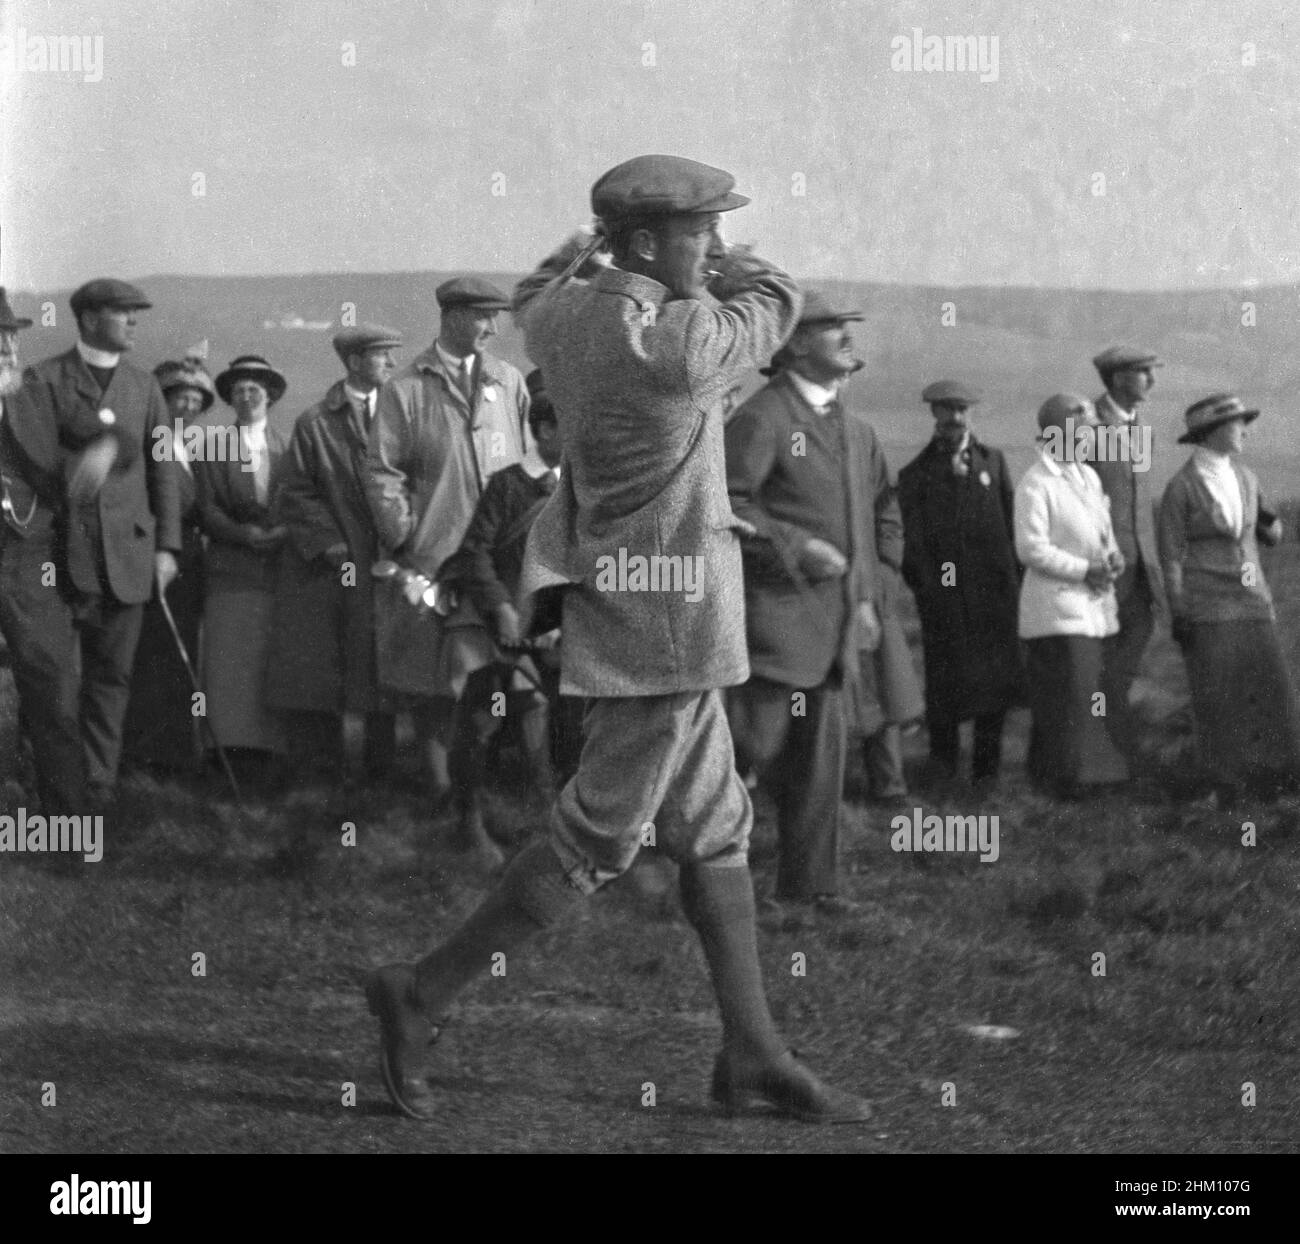 Um 1910, historisch, ein professioneller Golfer - möglicherweise Harry Vardon - in einer Jacke, plus-two und einer Stoffkappe und einer Zigarette in seinem Mund, die einen Schuss anhetzte, beobachtet von einer kleinen Gruppe von Zuschauern in der formalen Kleidung der Zeit. Sein Spielpartner, J H. Taylor, Mitbegründer der britischen PGA im Jahr 1901 und fünfmaliger Gewinner der British Open Championship, war ein Golfpionier dieser Zeit. Stockfoto